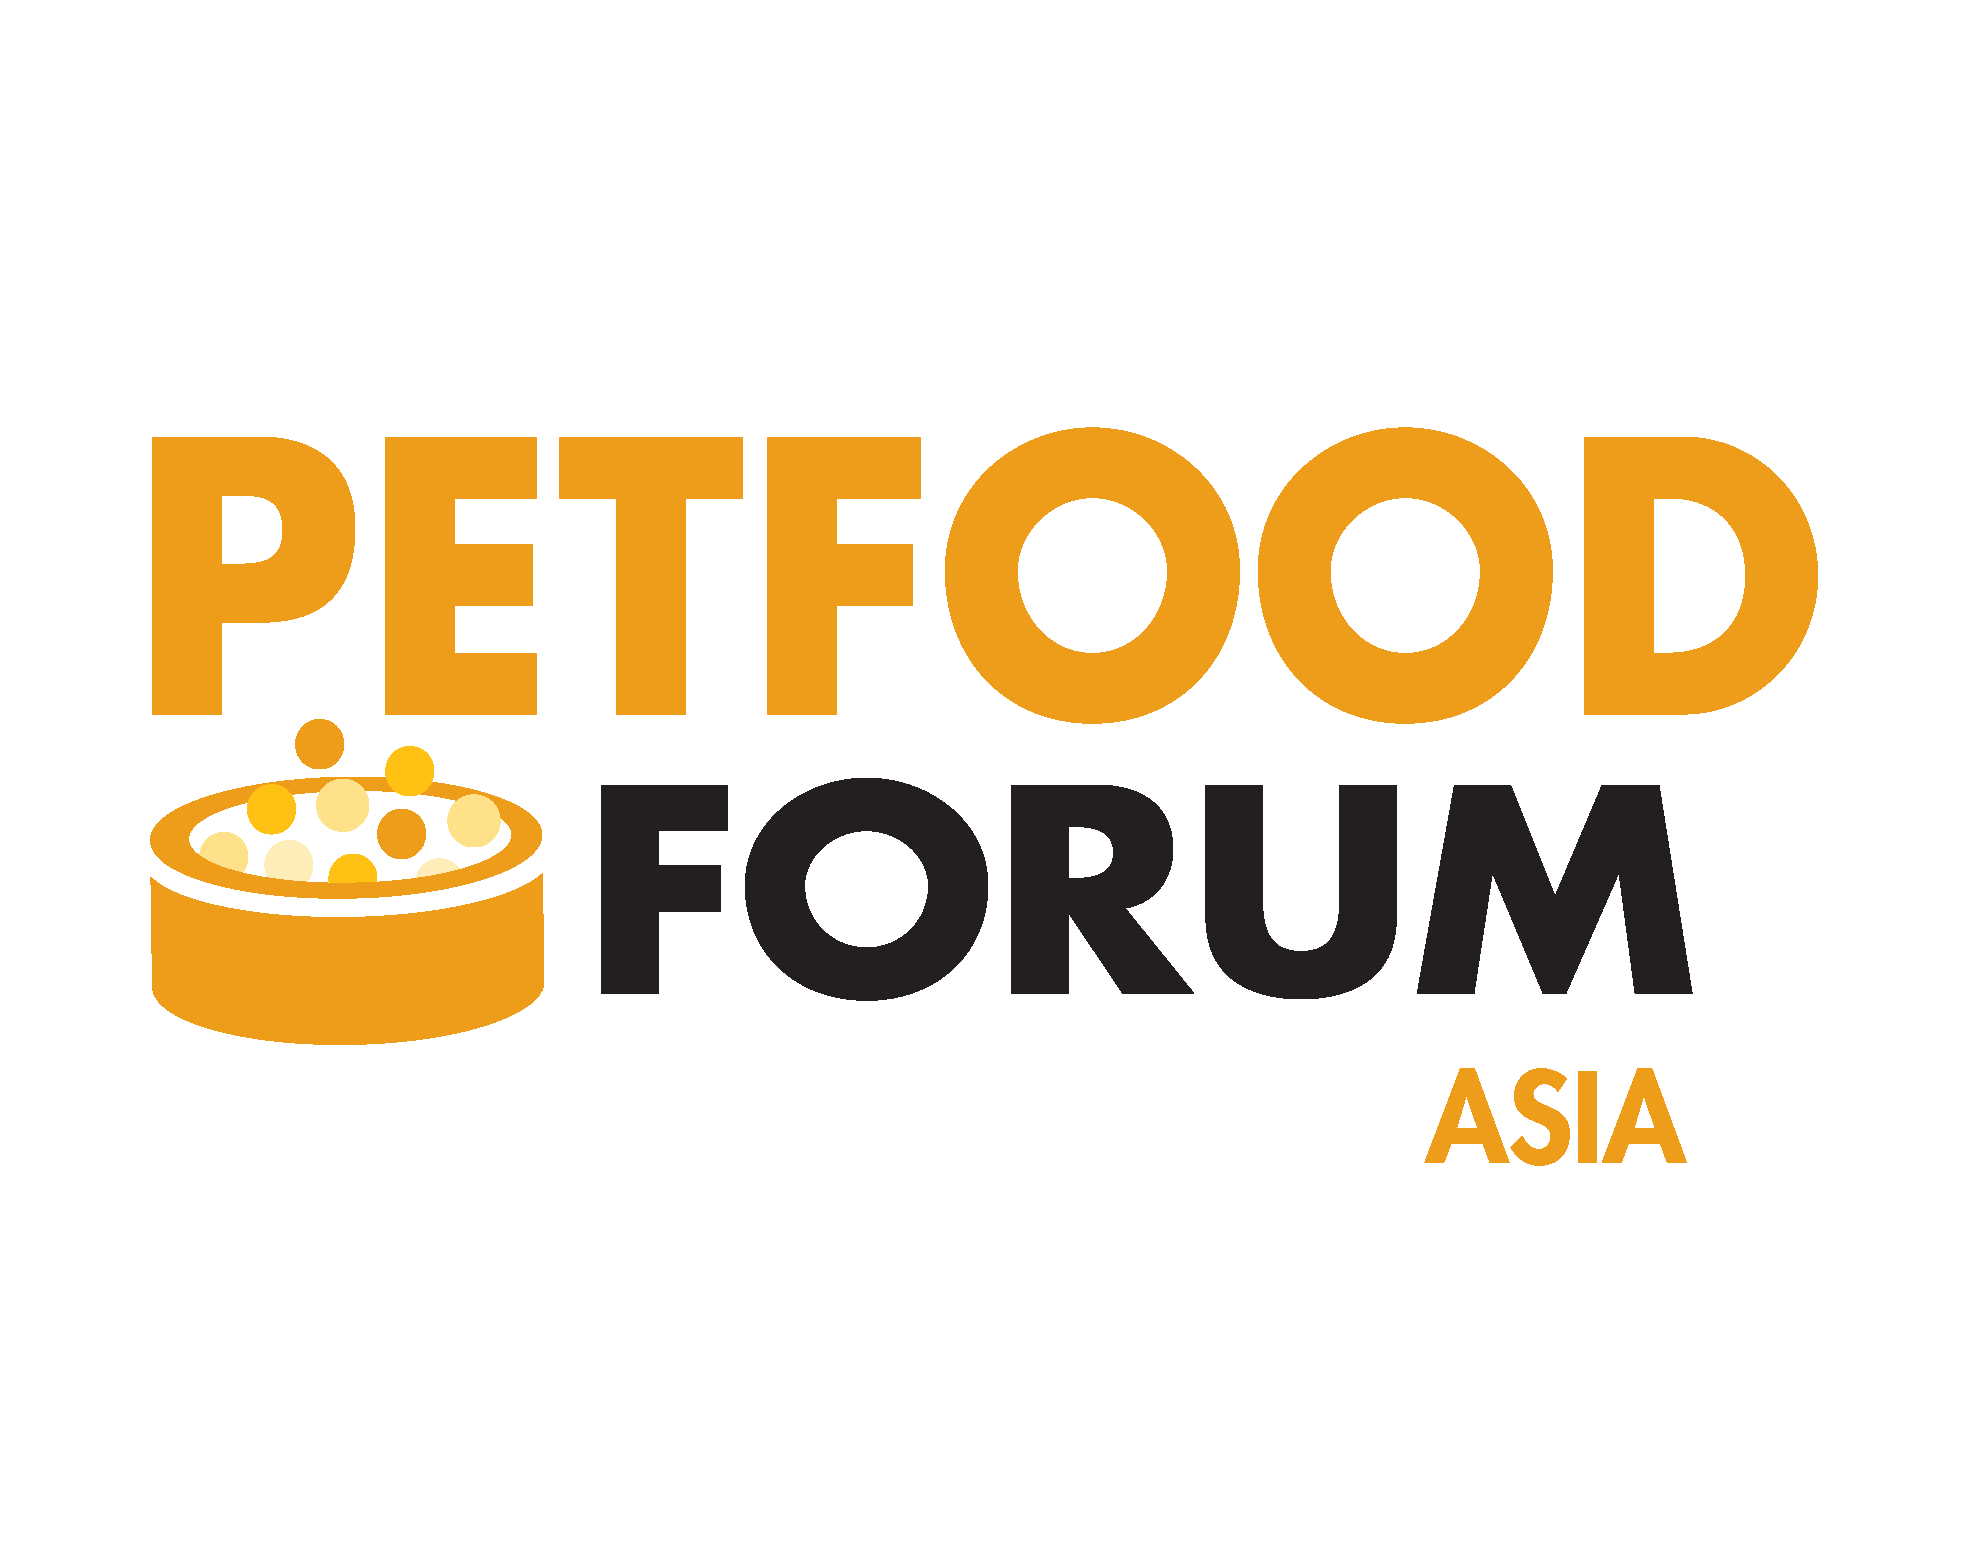 Petfood Forum Asia